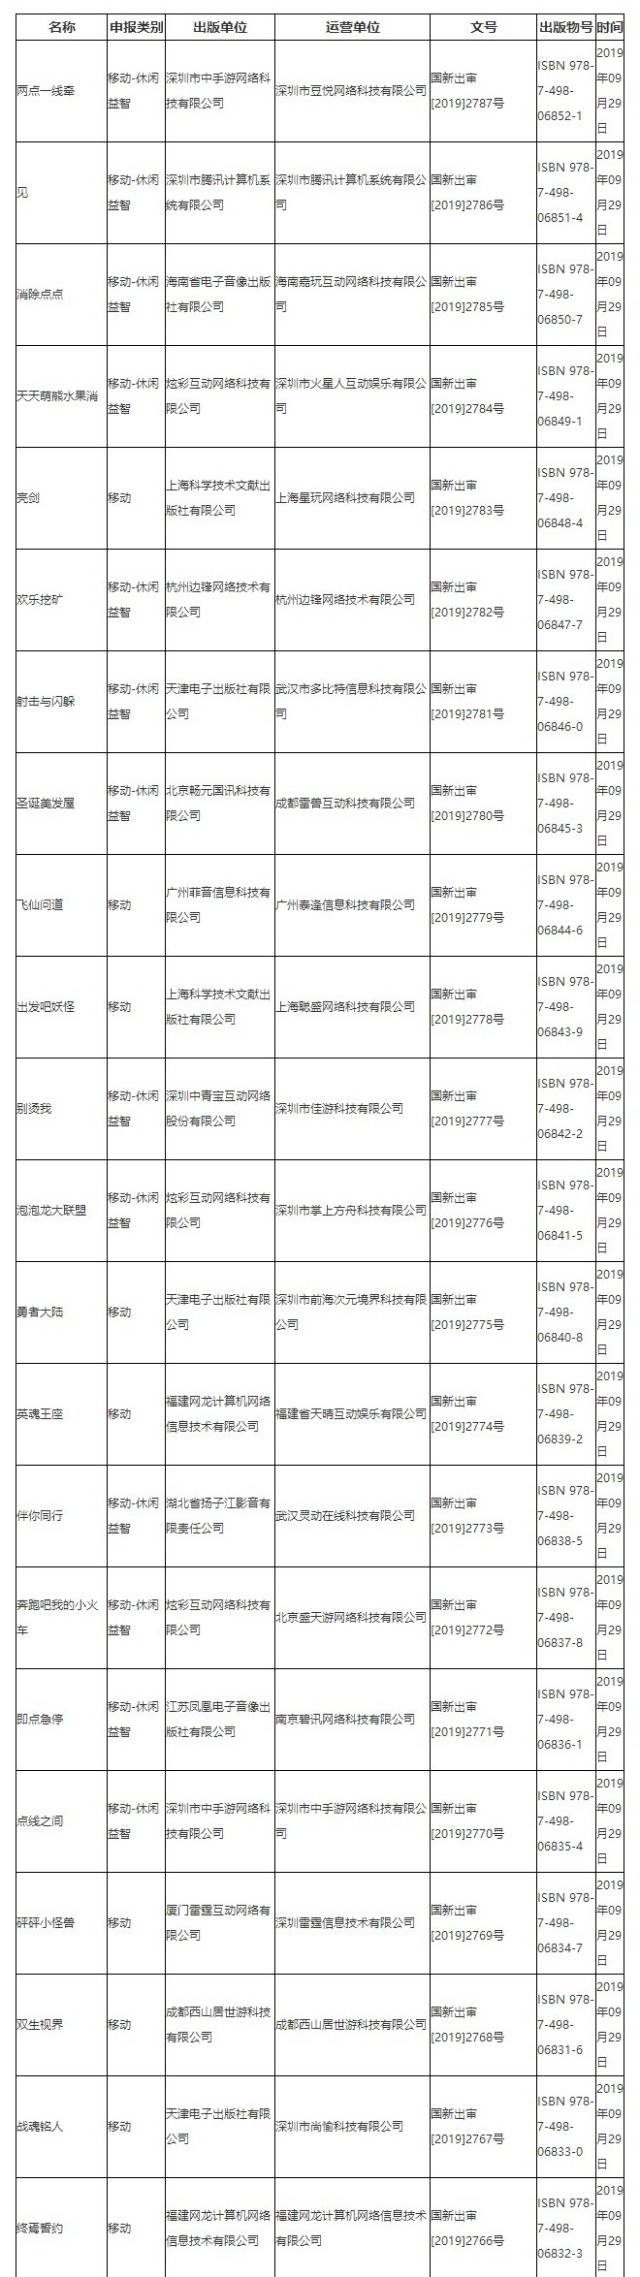 九月第四批国产网游版号公布 腾讯西山居新游过审